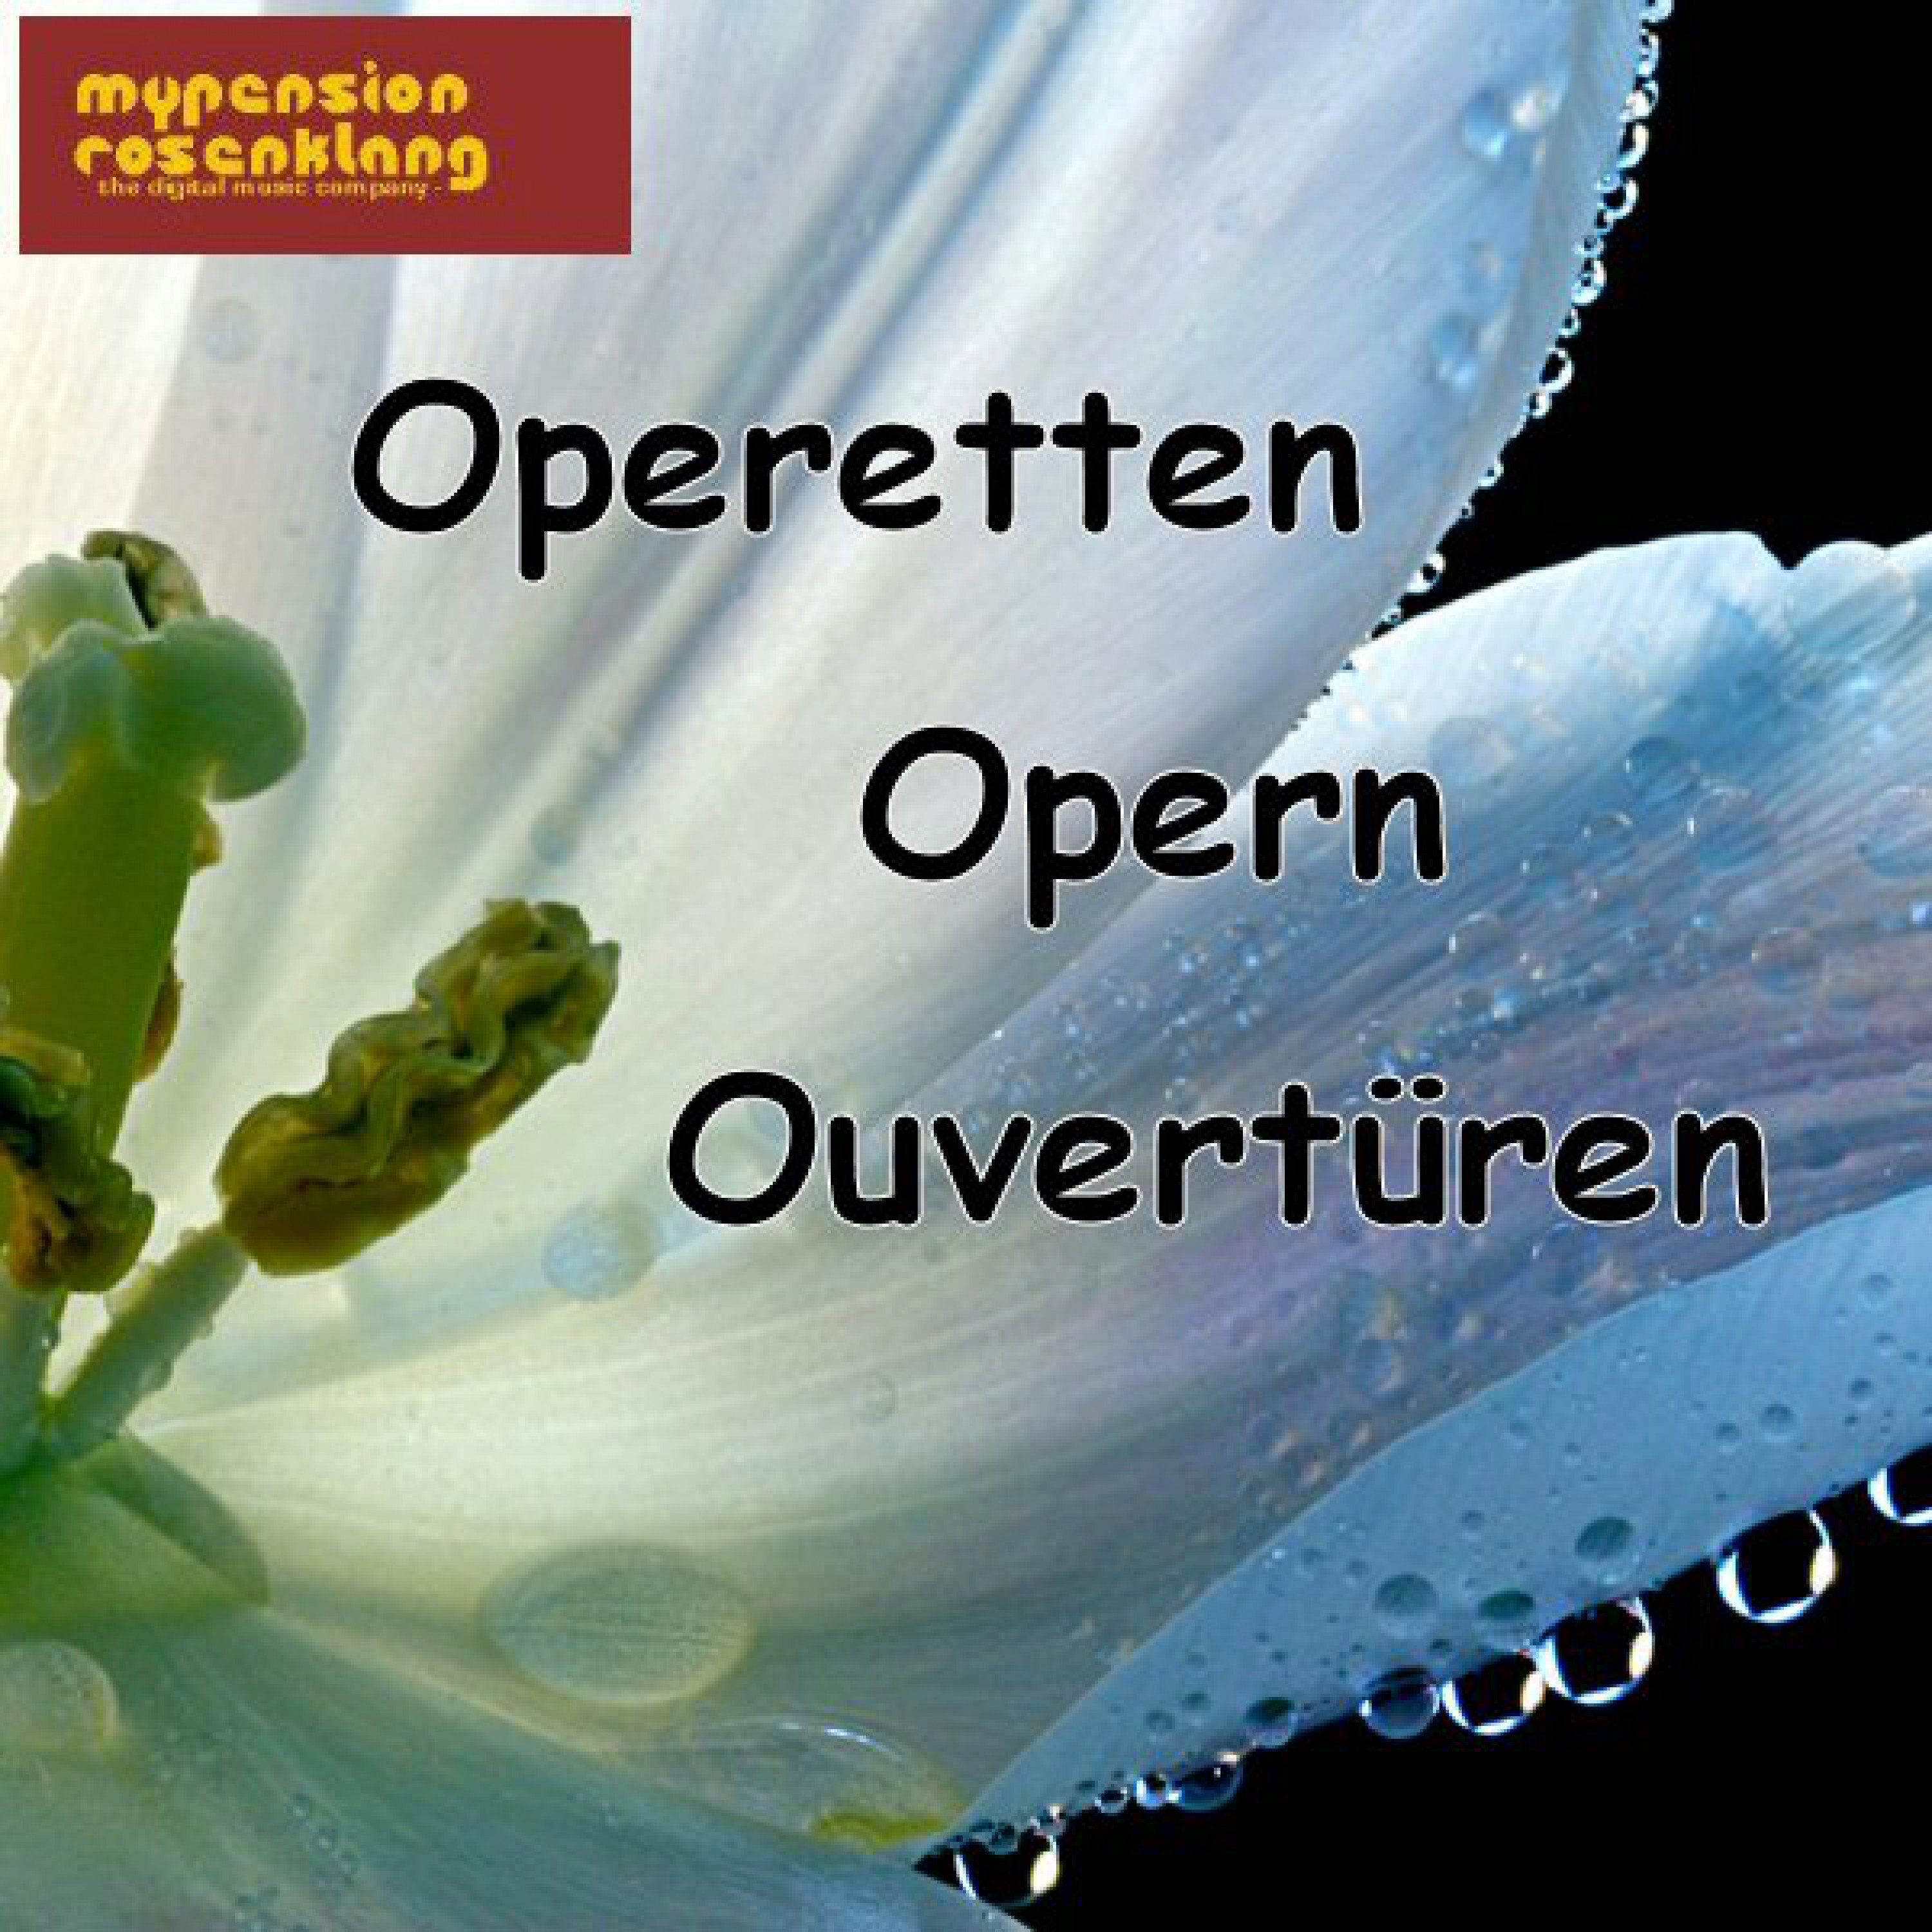 Operetten Opern Ouvertü ren